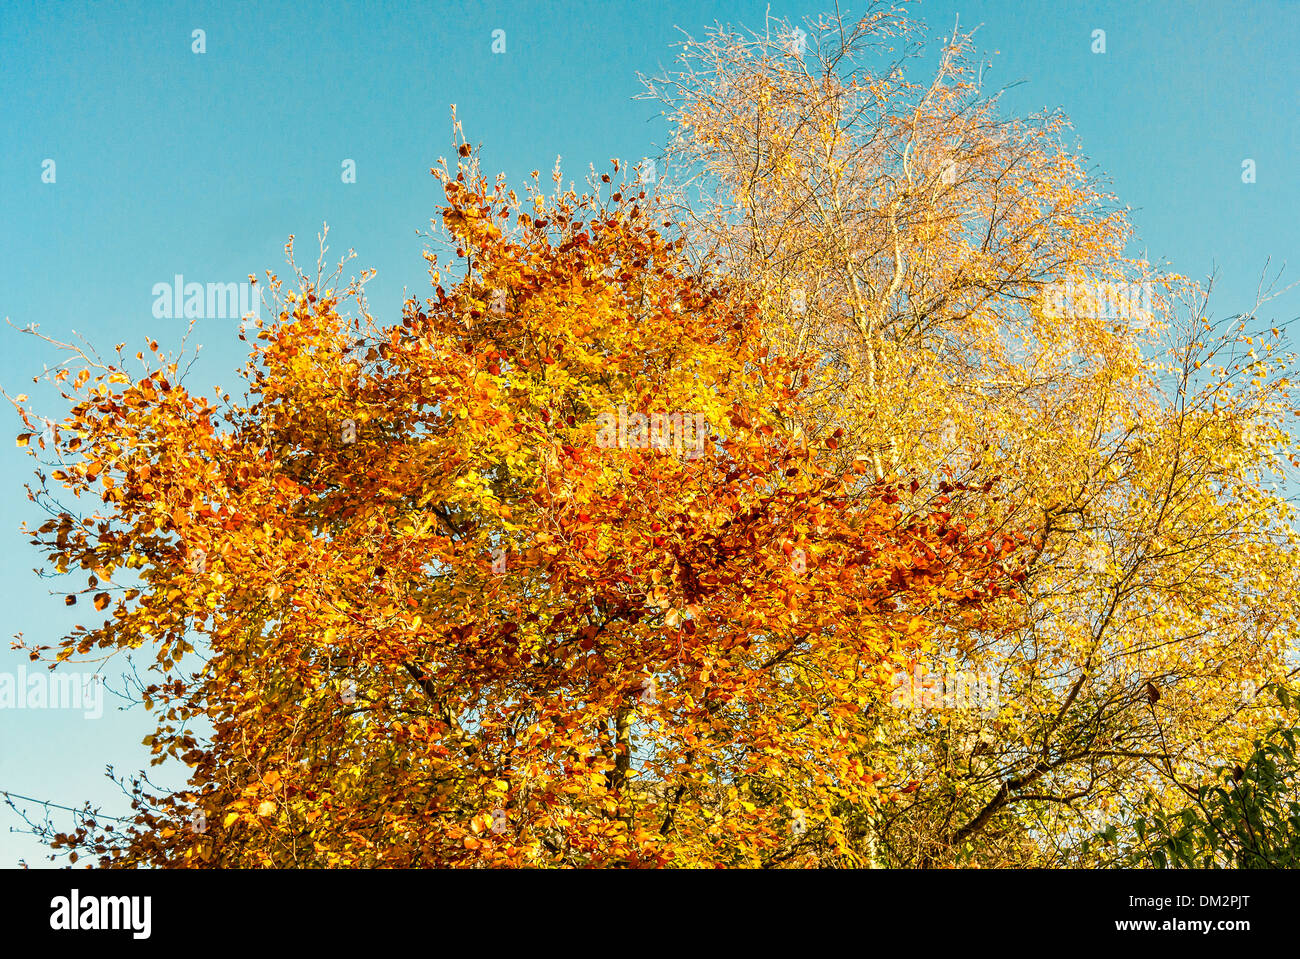 Giallo dorato di faggio e argento Betulla foglie nel novembre del Regno Unito Foto Stock